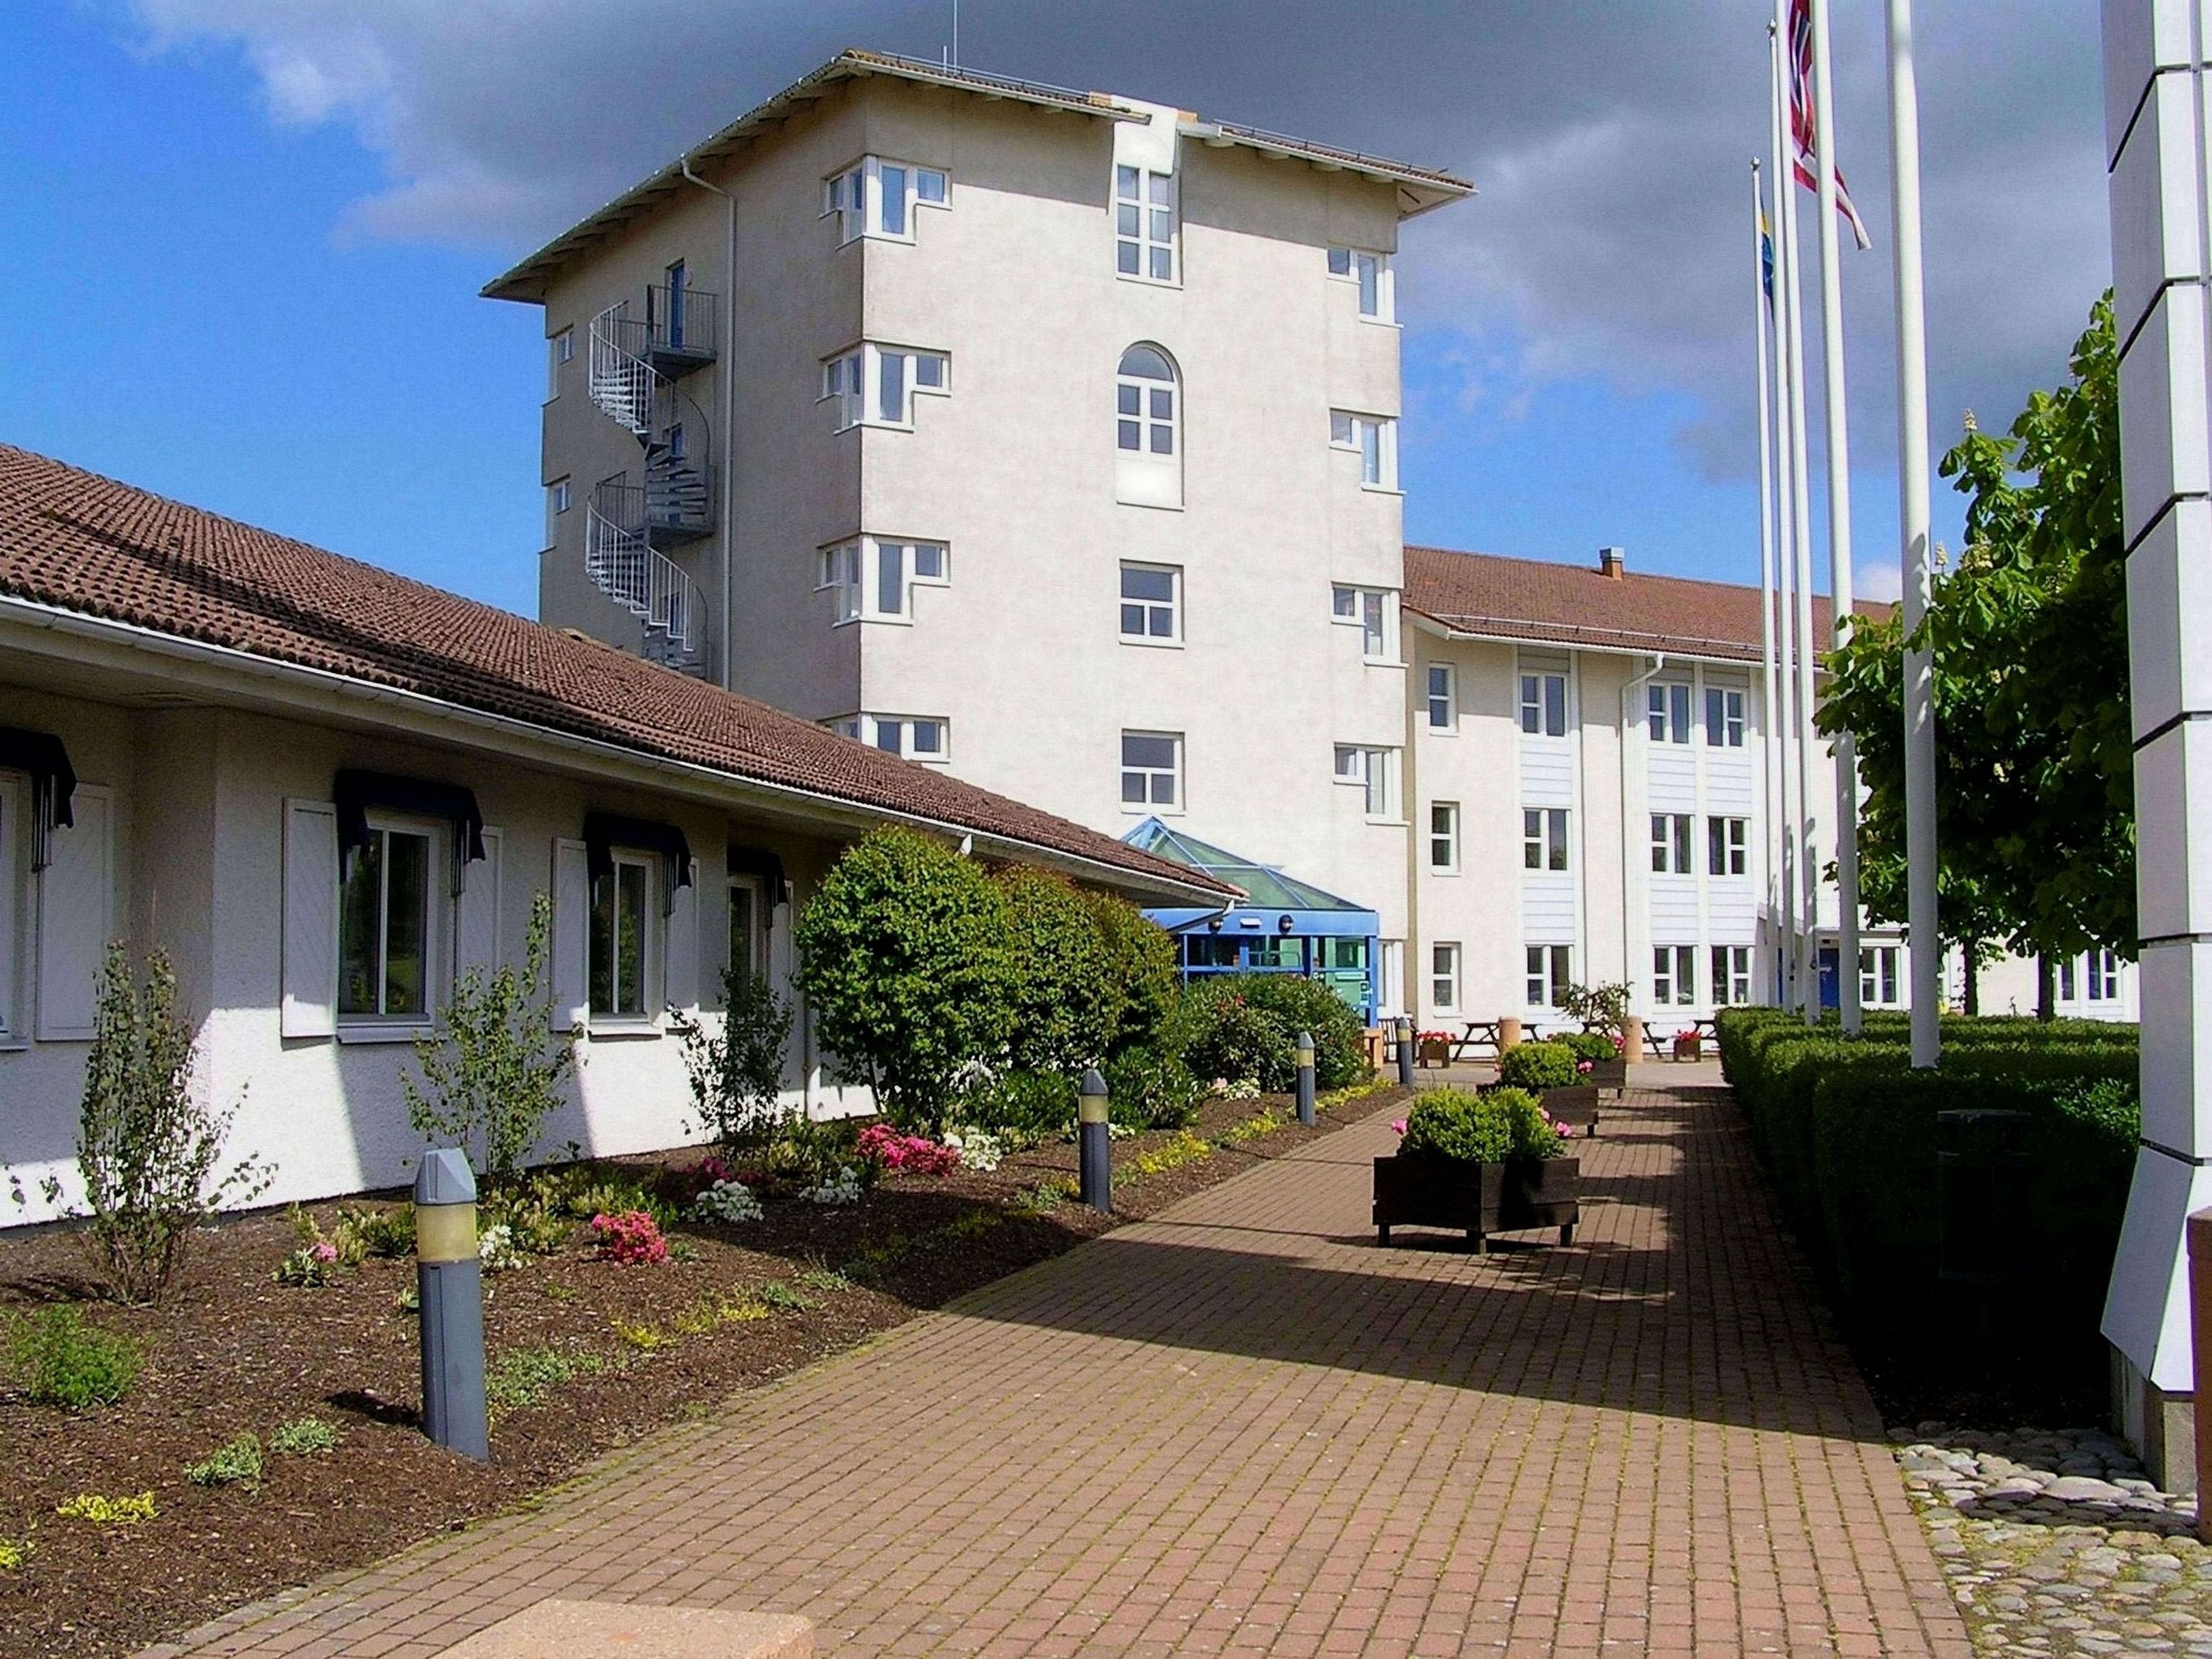 Hotell Erikslund image